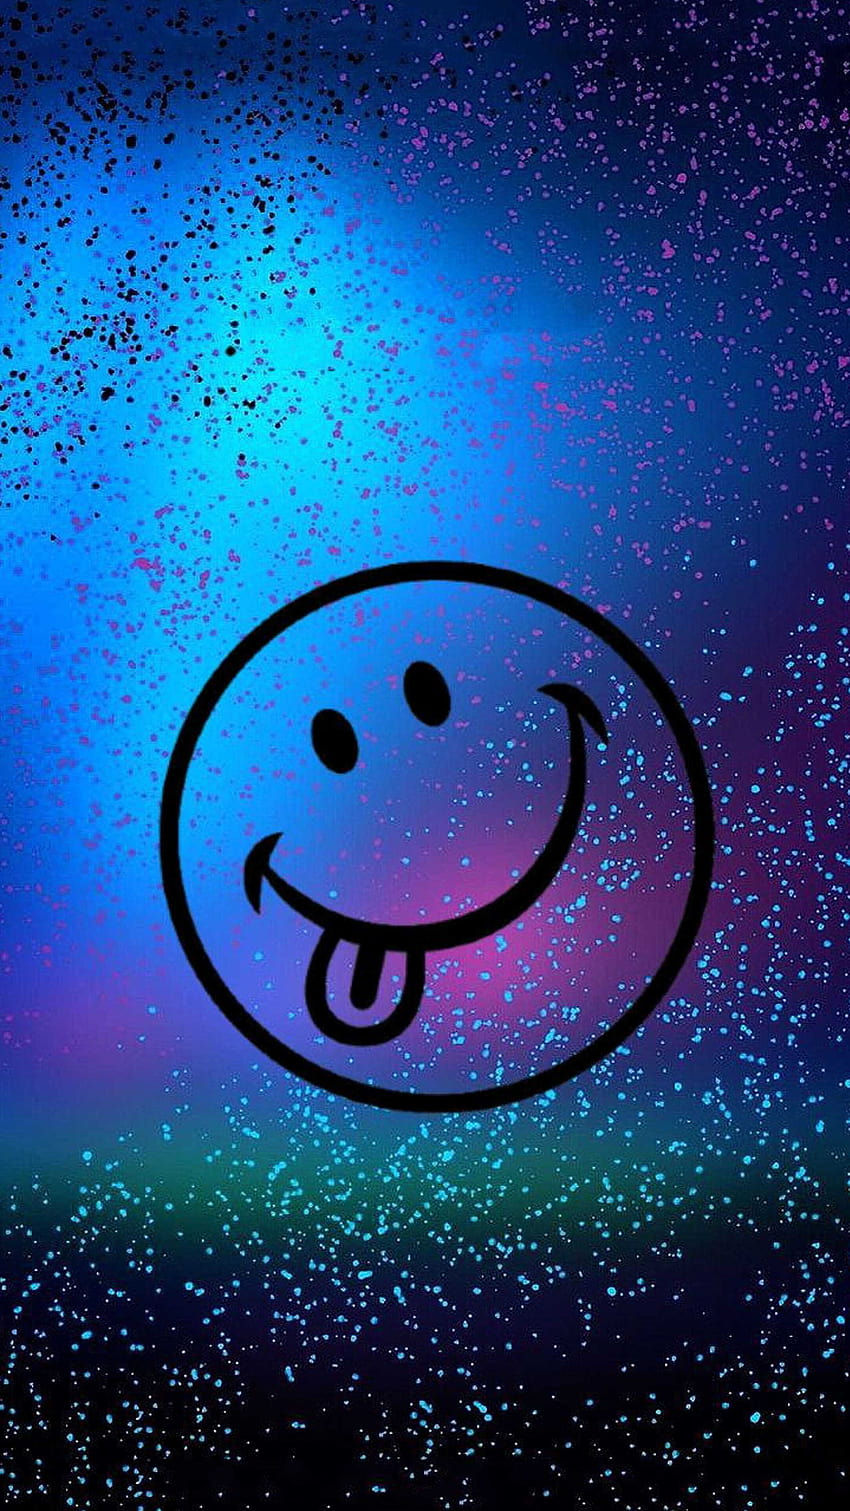 Wajah Smiley Biru, senyum menetes wallpaper ponsel HD